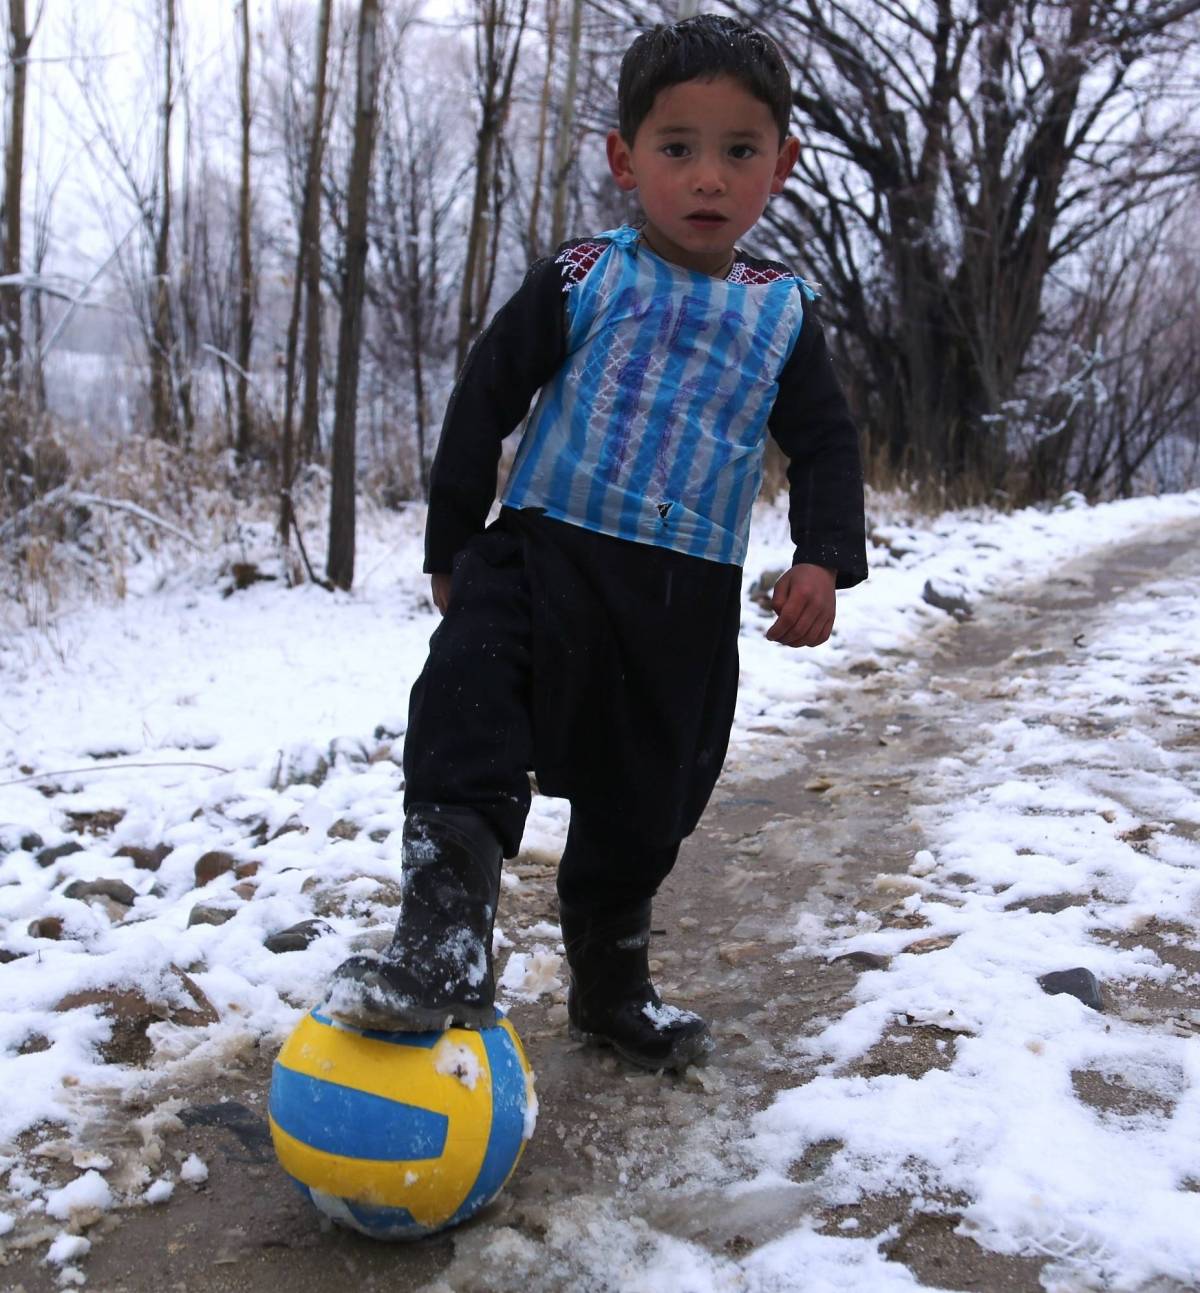 Il piccolo Murtaza con la maglia improvvisata di Messi